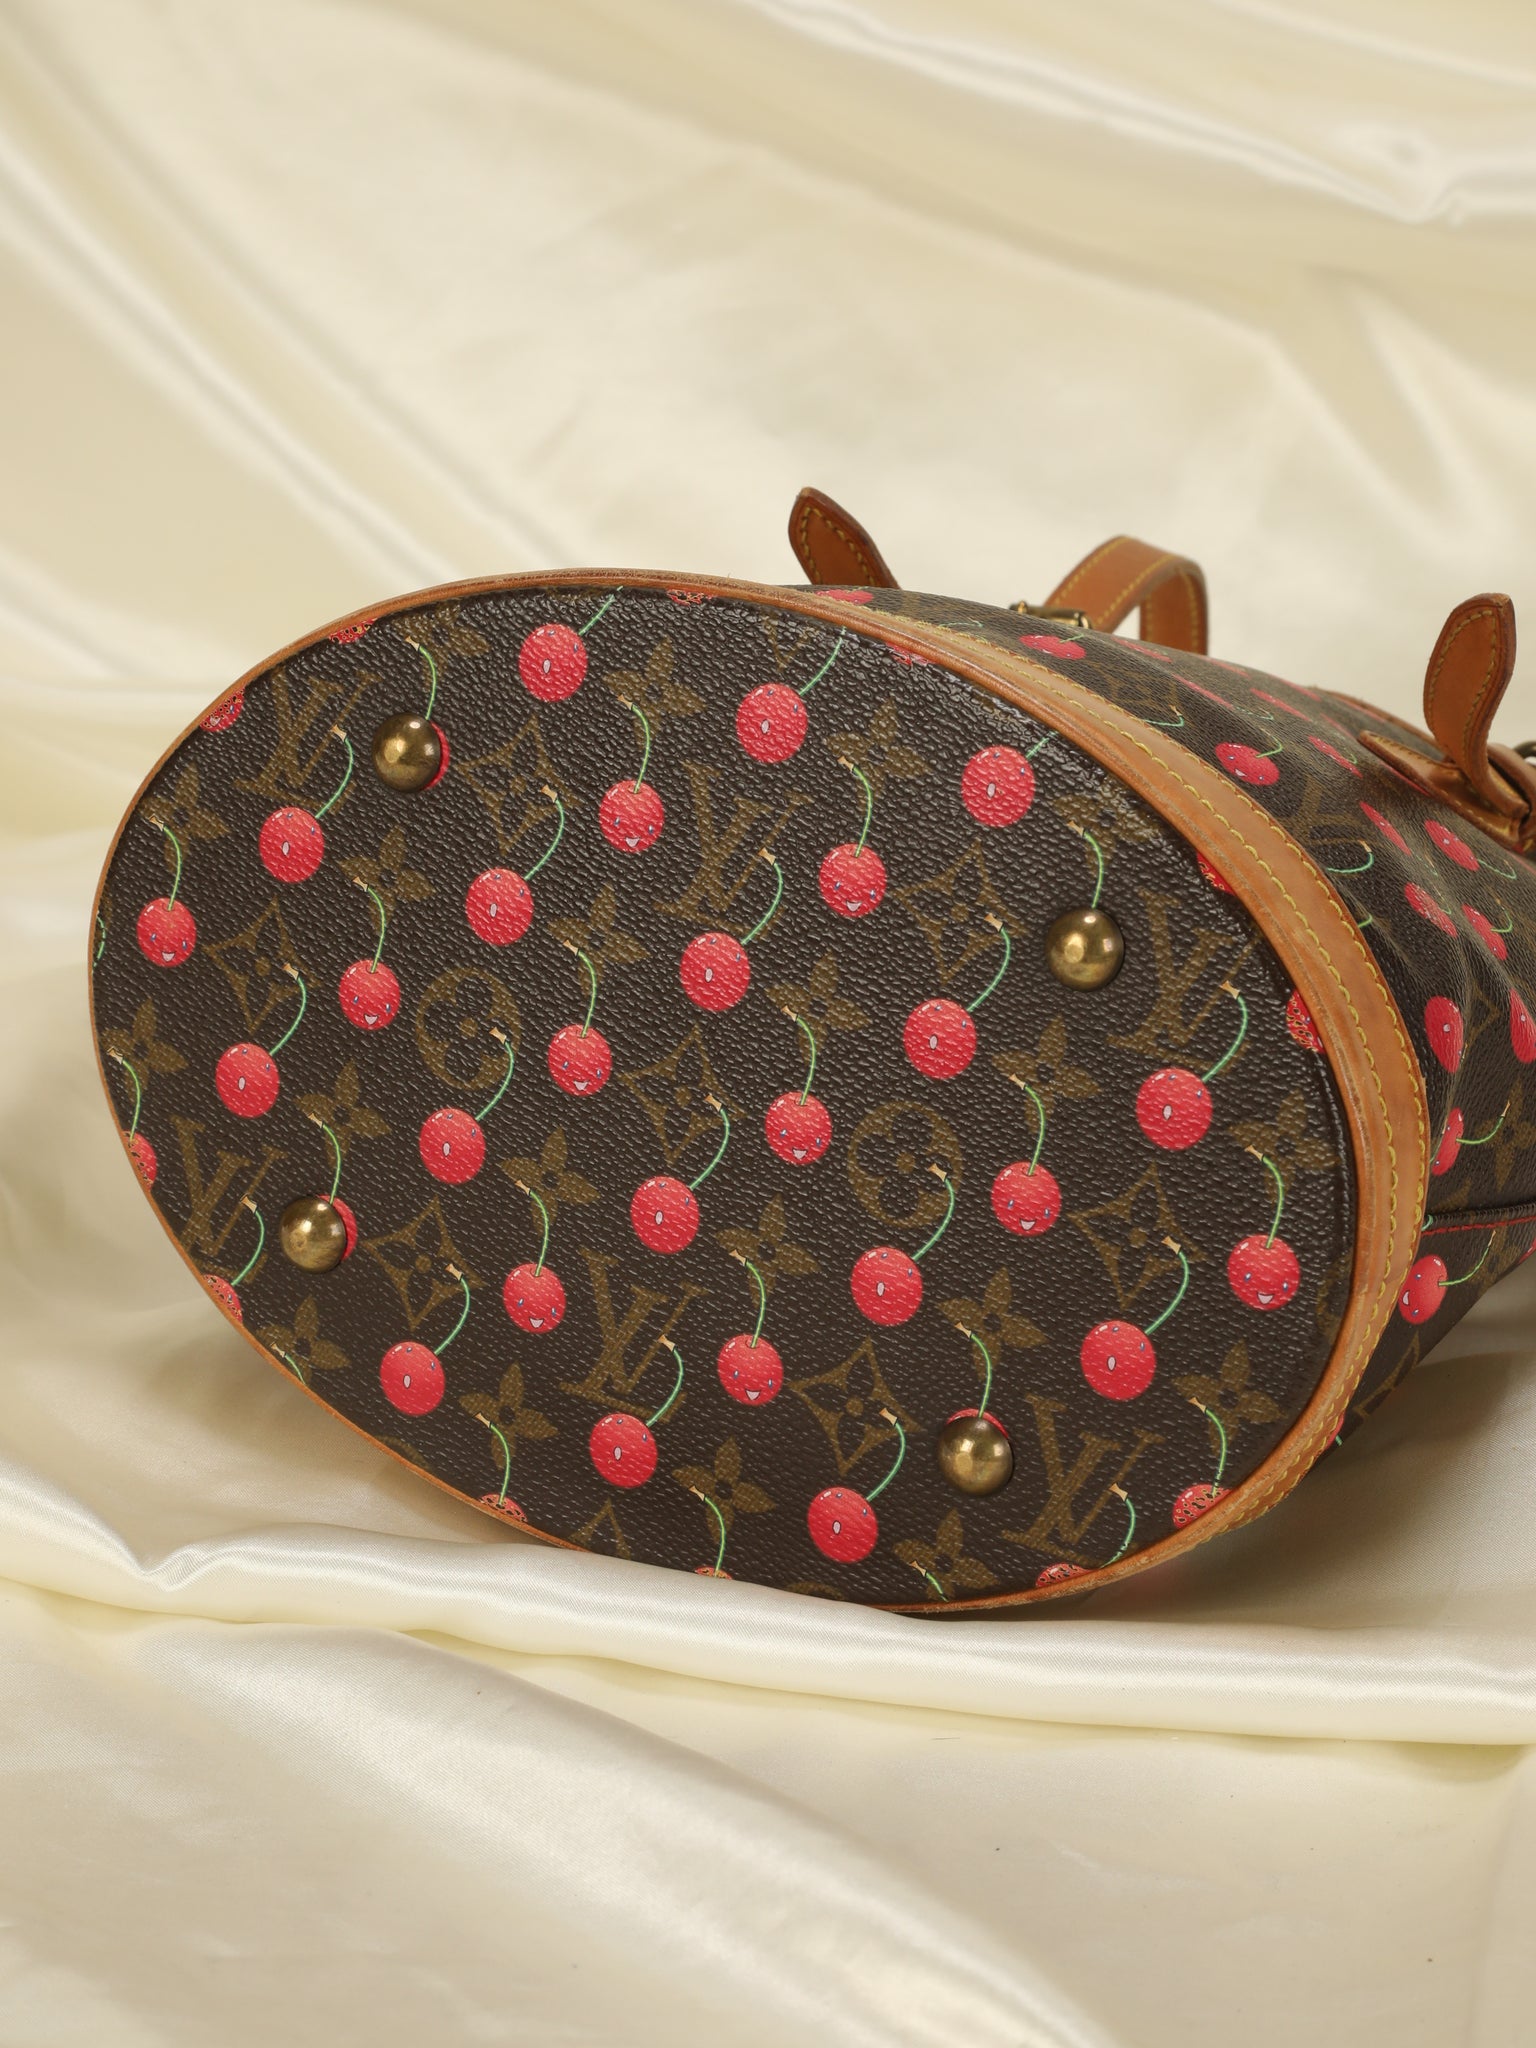 Louis Vuitton Vintage Limited Edition Cherry Cerise Petite Bucket Bag